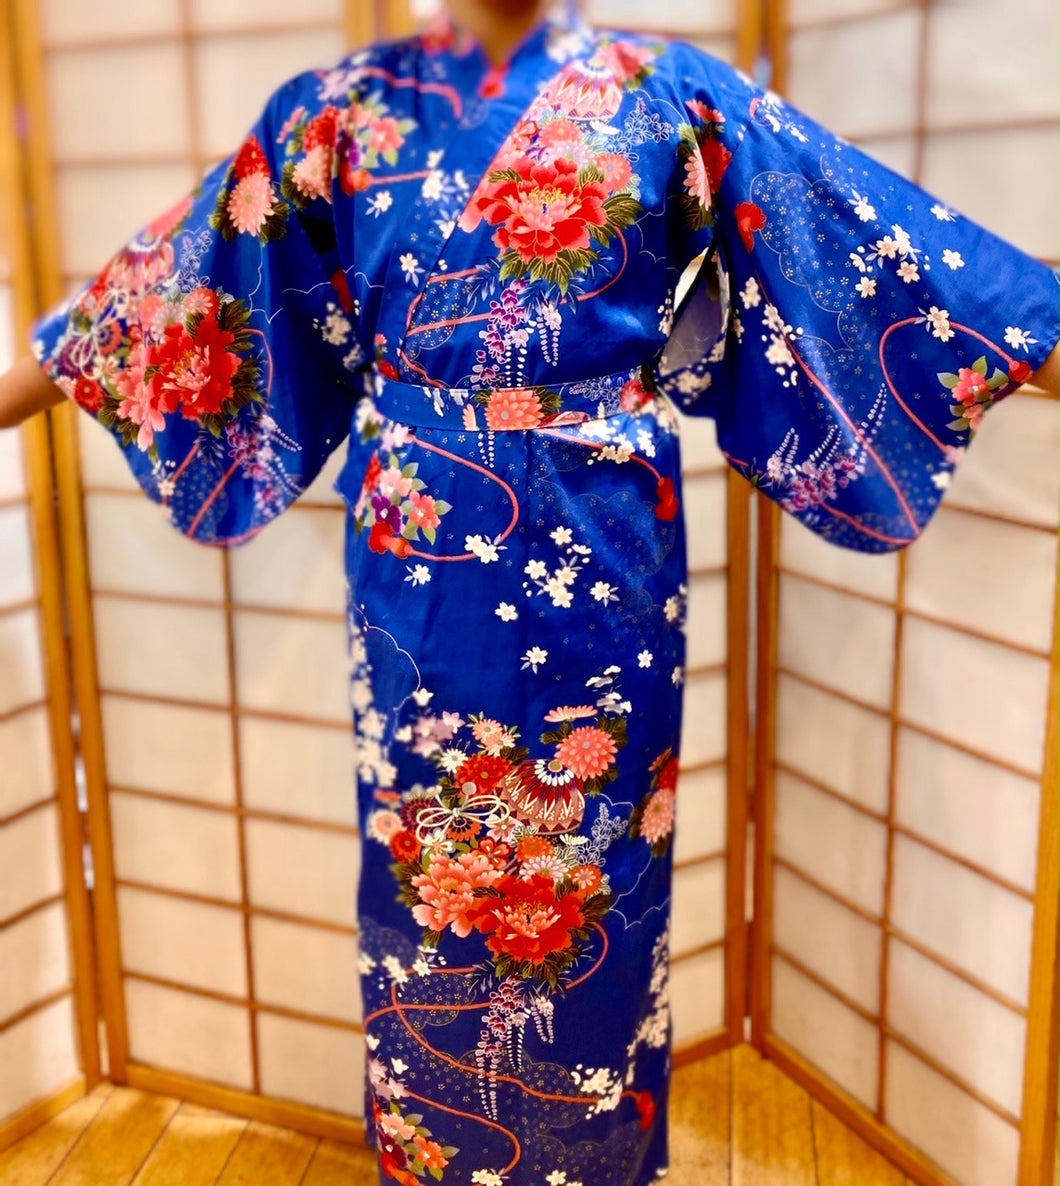 Kimono Robe - girls temari ball in blue